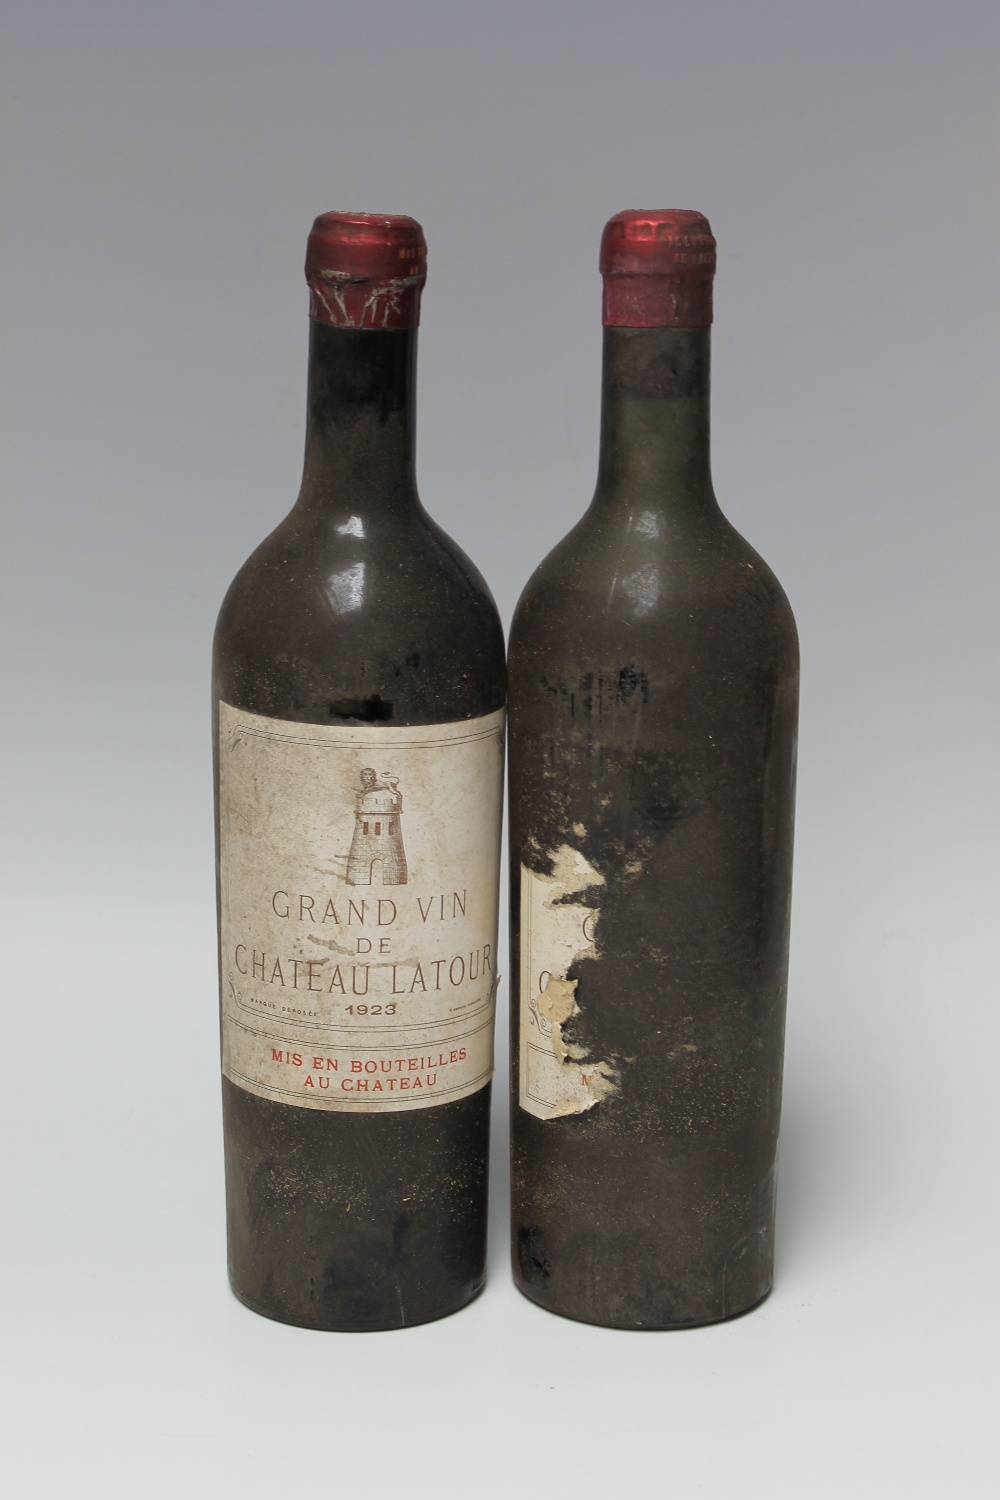 2 BOTTLES OF CHATEAU LATOUR GRAND CRU CLASSE PAUILLAC 1923, bottle A mid shoulder, bottle B no